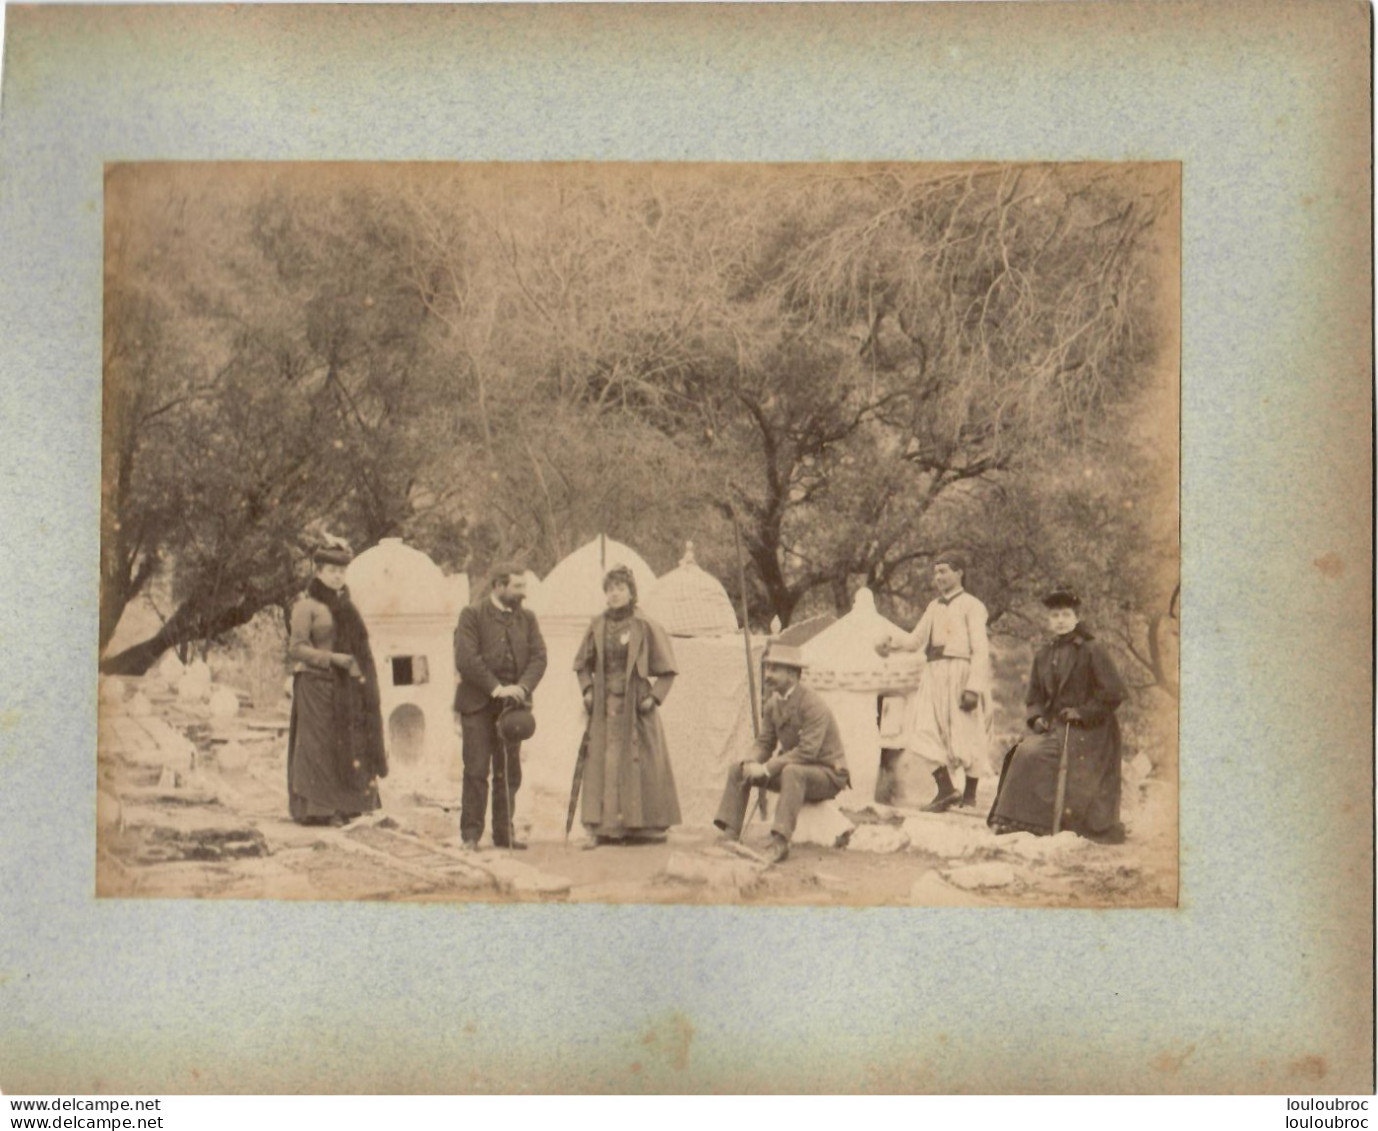 ALGERIE FIN 19e  SIECLE  PHOTO ORIGINALE SUR CARTON FORMAT DE LA PHOTO 17X12CM R7 - Old (before 1900)